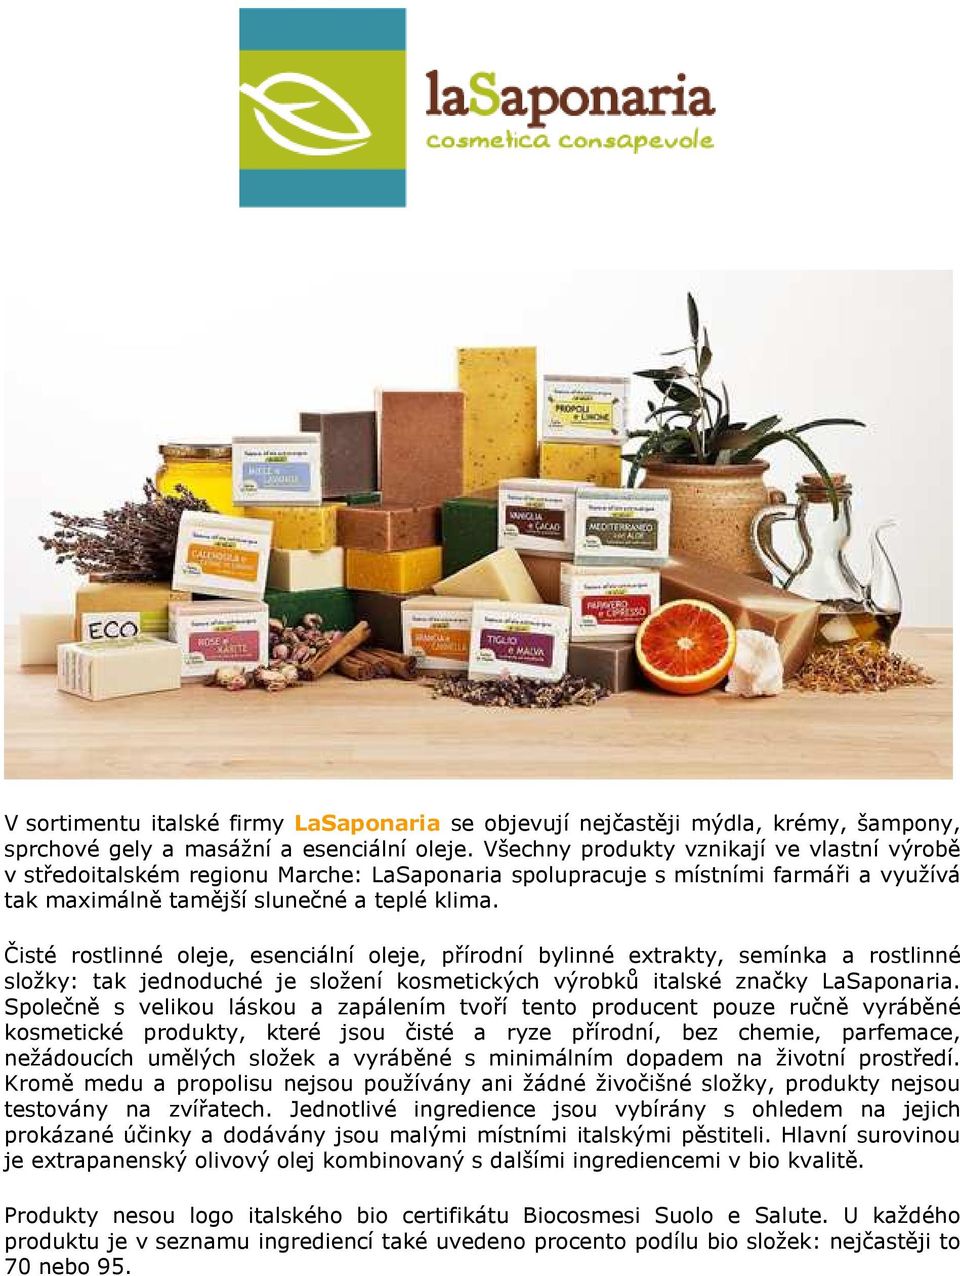 Čisté rostlinné oleje, esenciální oleje, přírodní bylinné extrakty, semínka a rostlinné složky: tak jednoduché je složení kosmetických výrobků italské značky LaSaponaria.